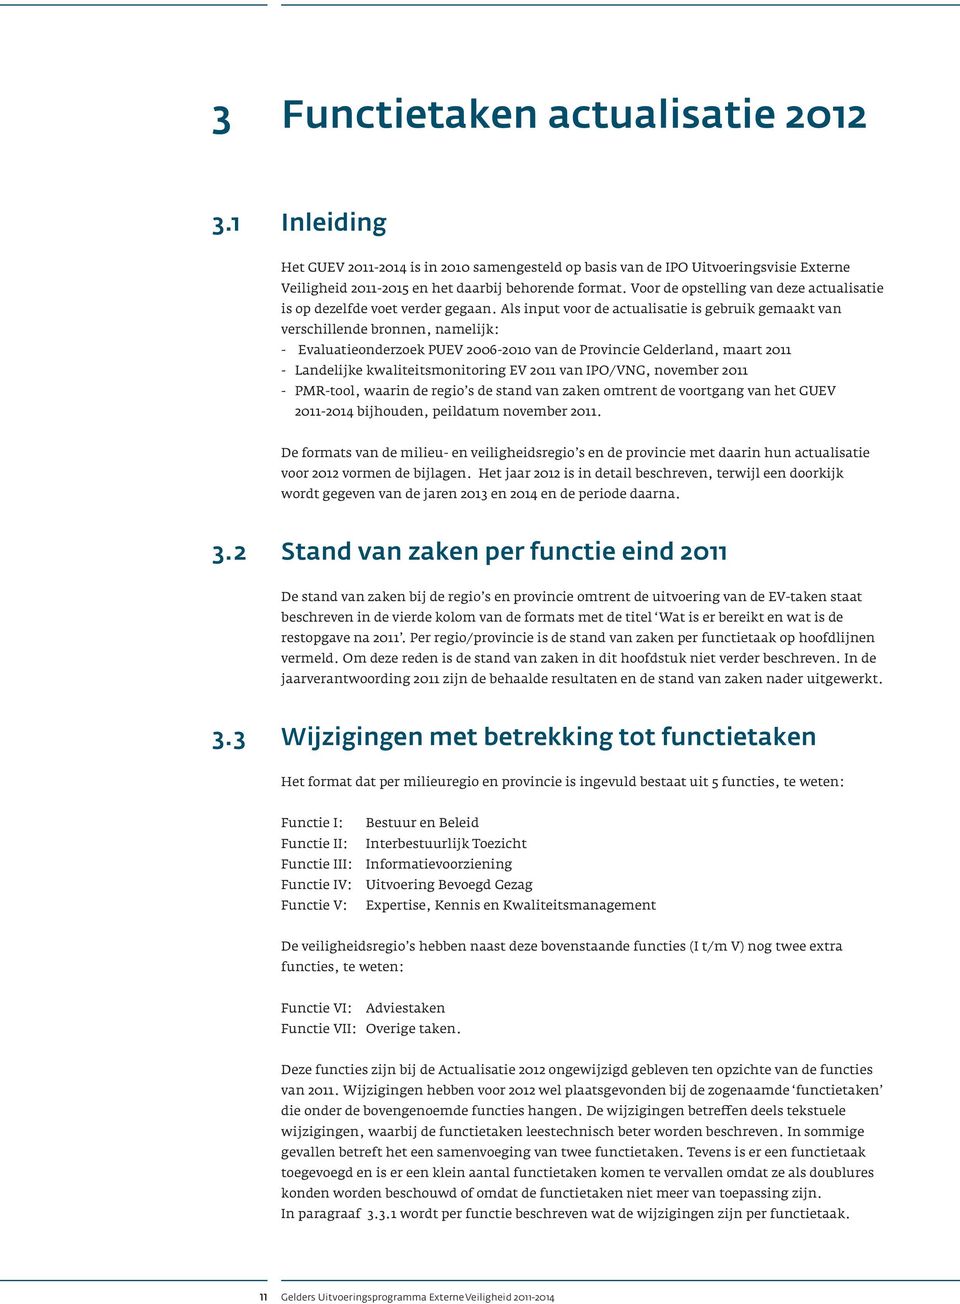 Als input voor de actualisatie is gebruik gemaakt van verschillende bronnen, namelijk: - Evaluatieonderzoek PU 2006-2010 van de Provincie Gelderland, maart 2011 - Landelijke kwaliteitsmonitoring 2011